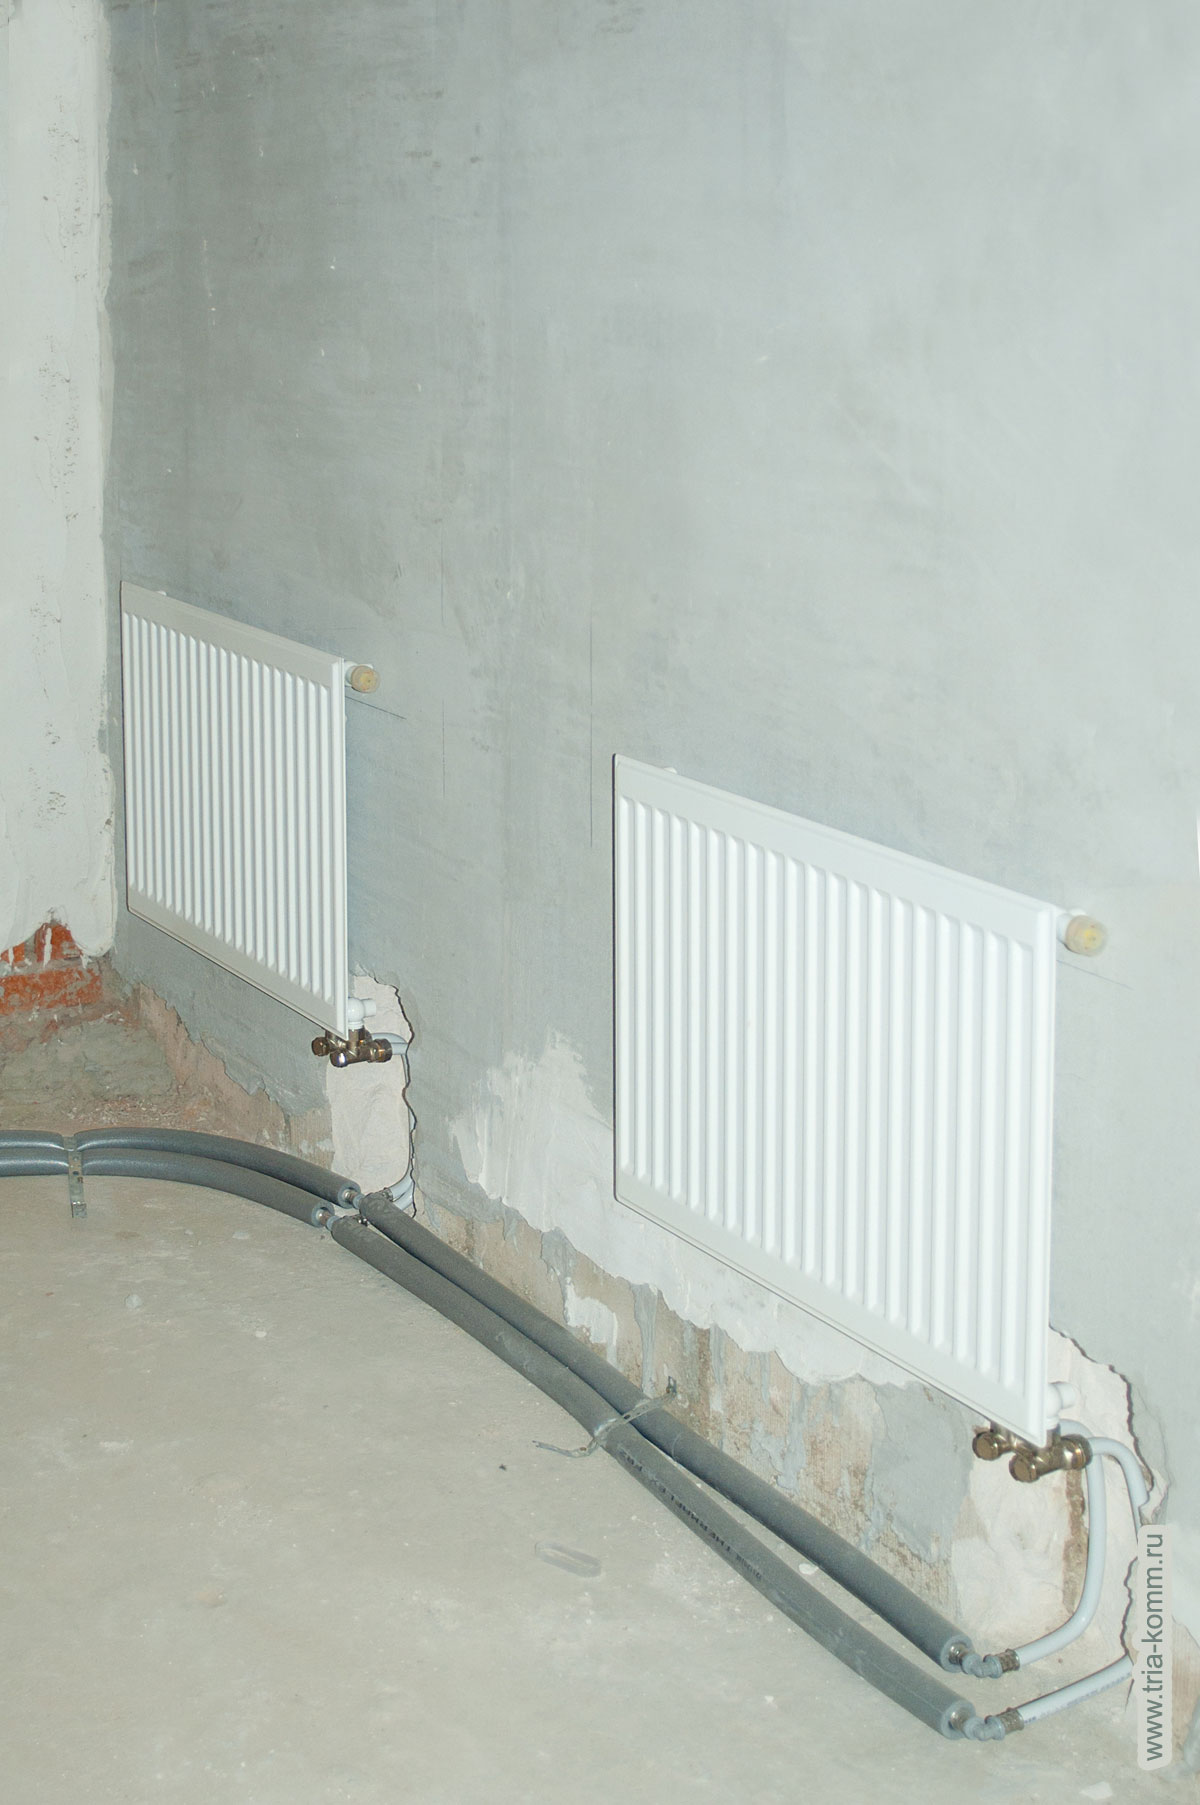 Фото радиаторов отопления выполнено перед отделкой помещений